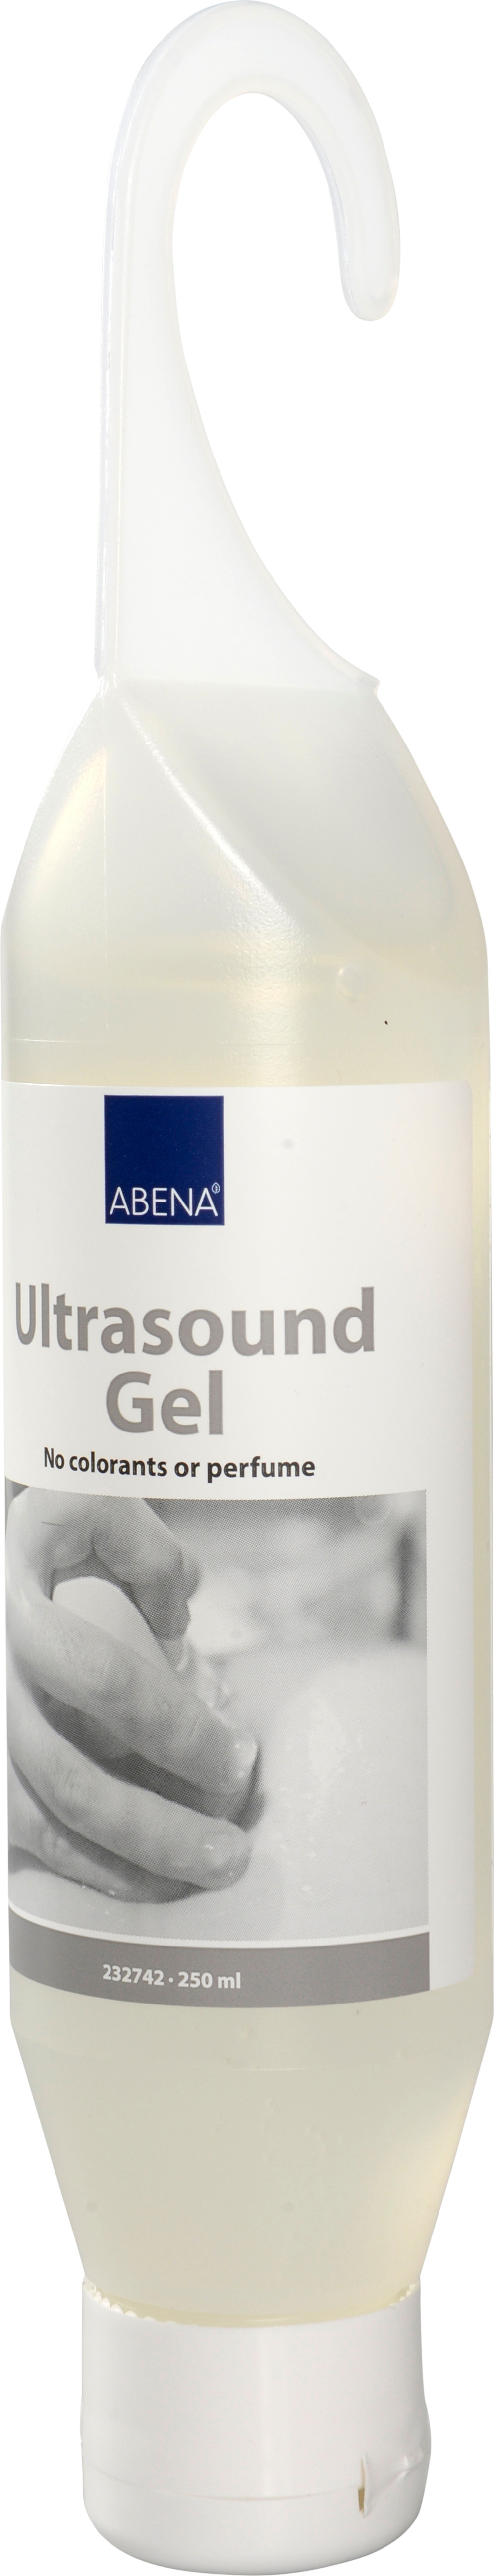 Eksploration og ultralydsgel 15 x 250 ml Uden farve og parfume